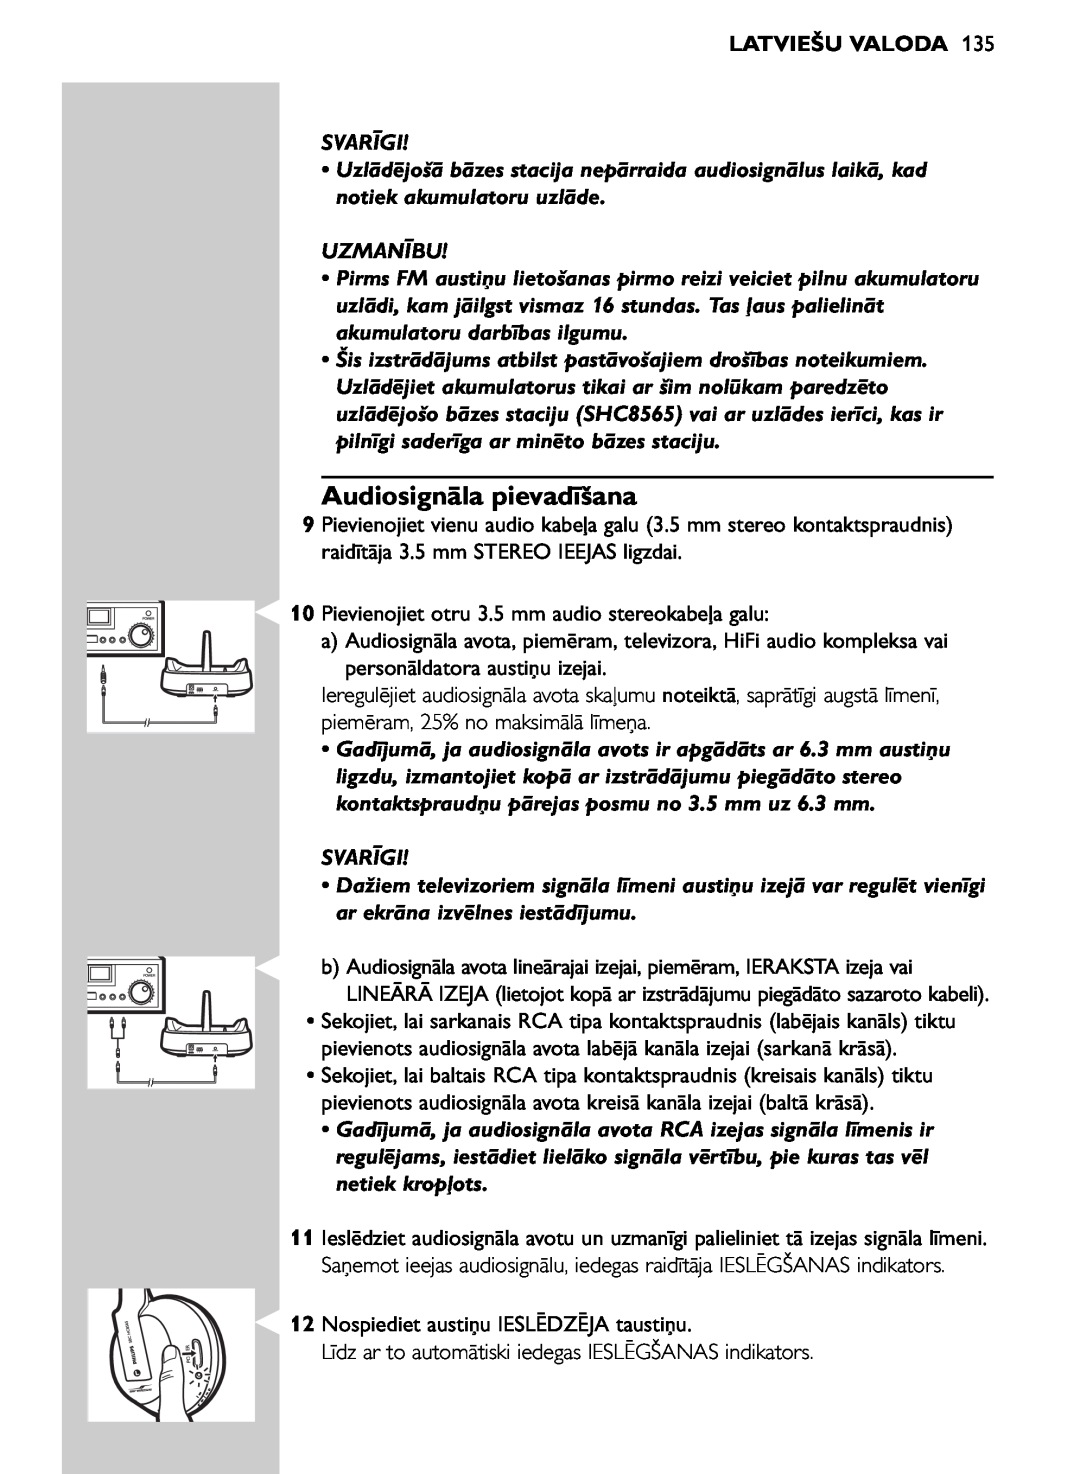 Philips SHC8565/00 manual Audiosignāla pievadīšana, Latviešu Valoda, Svarīgi, Uzmanību 